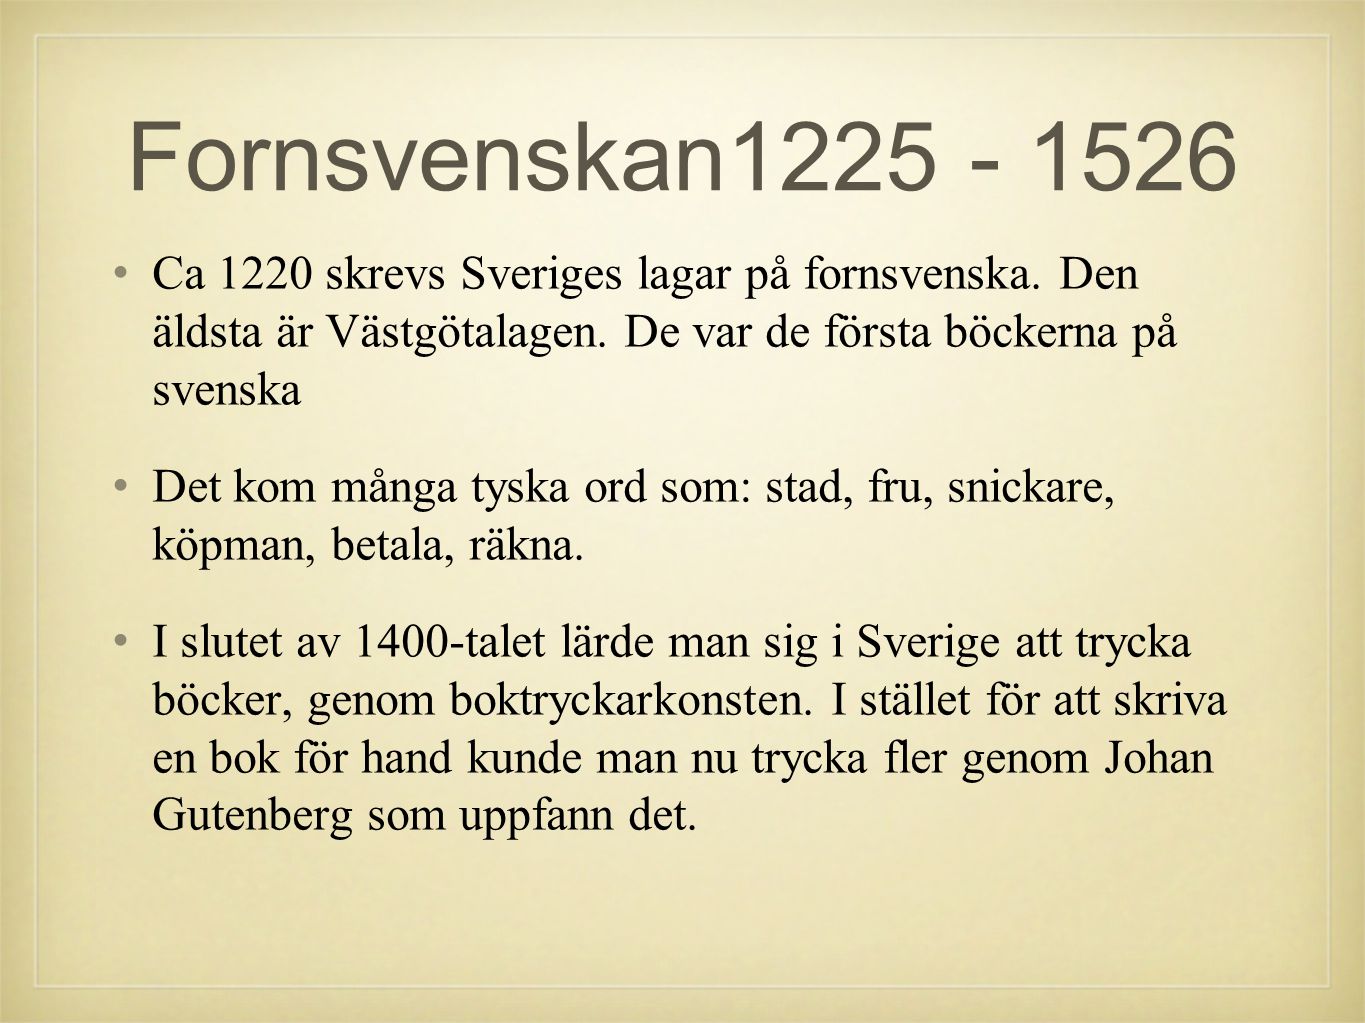 Fornsvenskan Ca 1220 skrevs Sveriges lagar på fornsvenska. Den äldsta är Västgötalagen. De var de första böckerna på svenska.